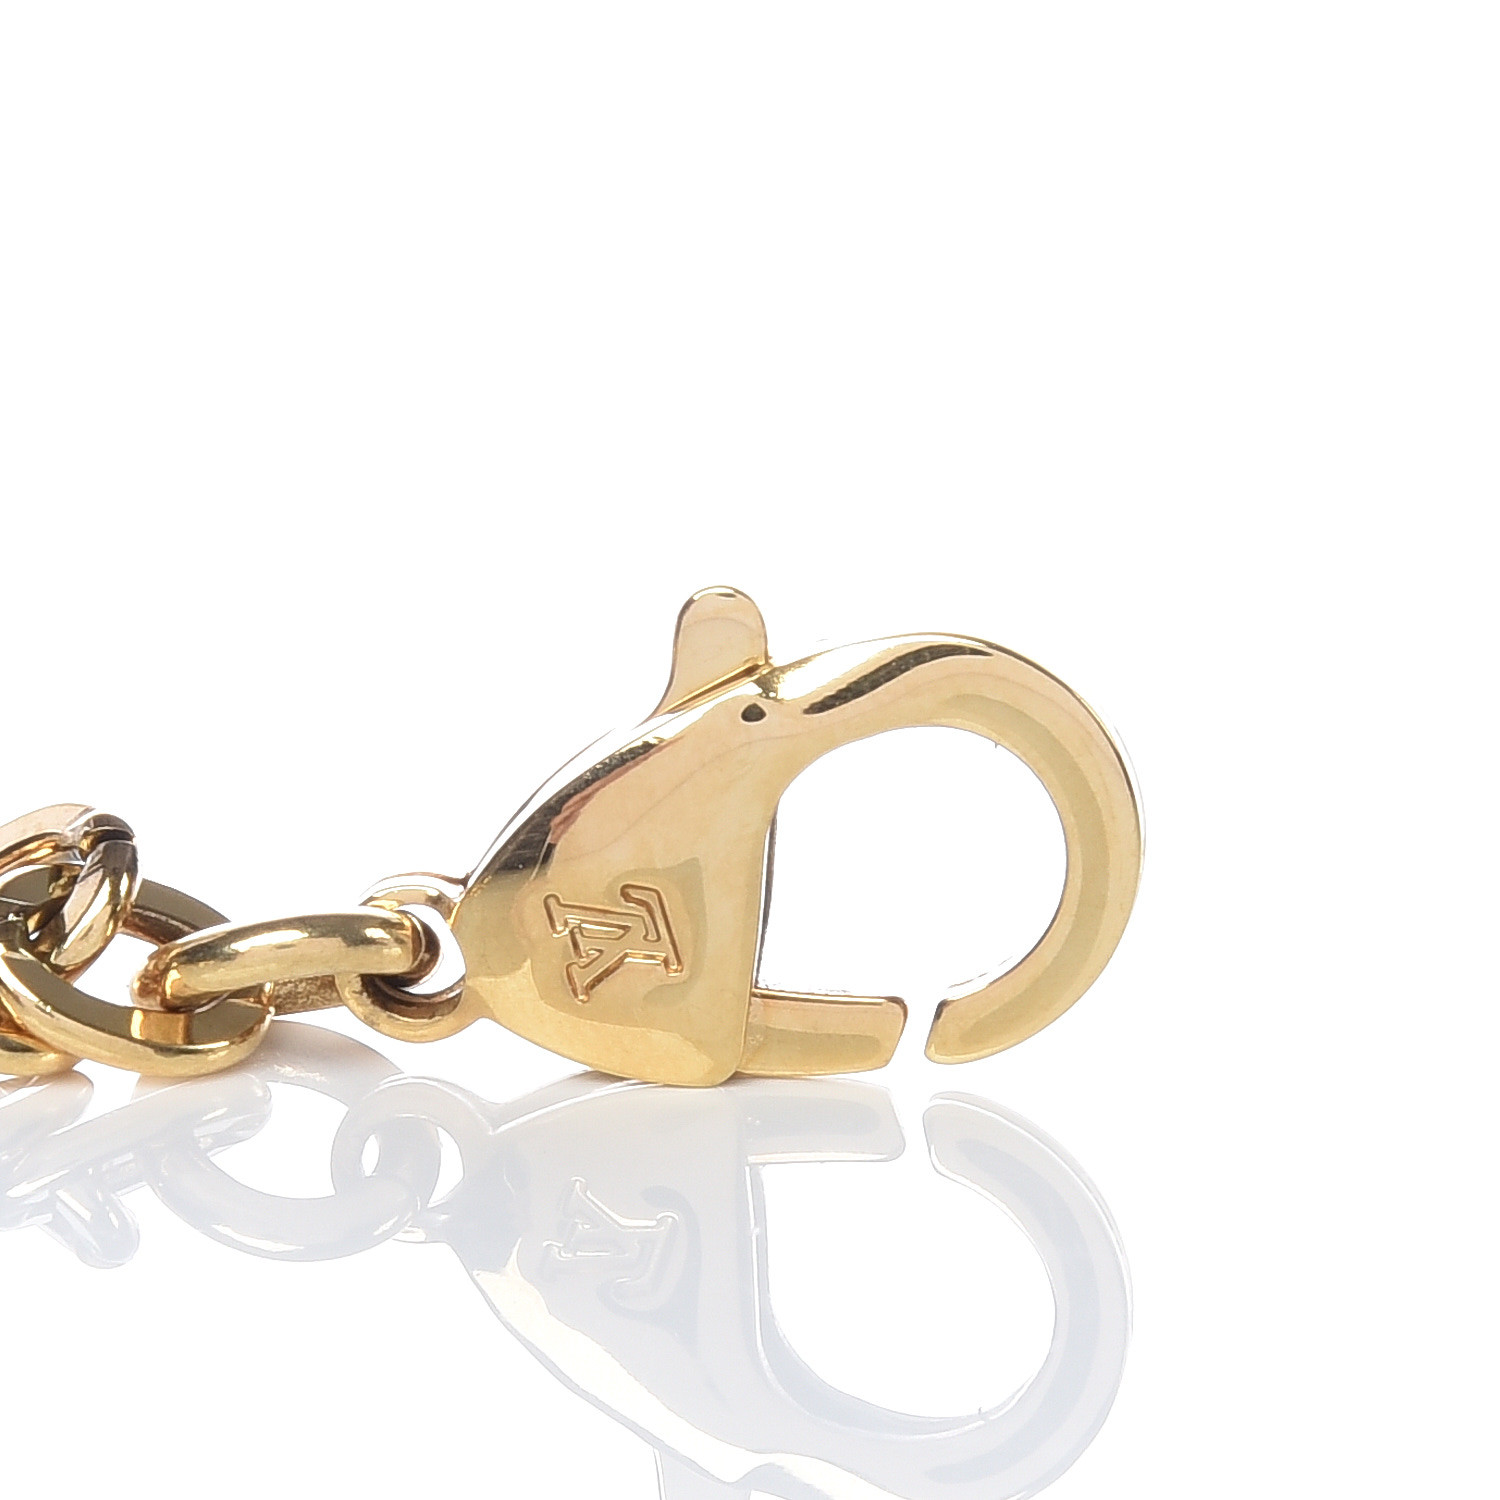 Louis Vuitton Empreinte Ring, White Gold Grey. Size 46